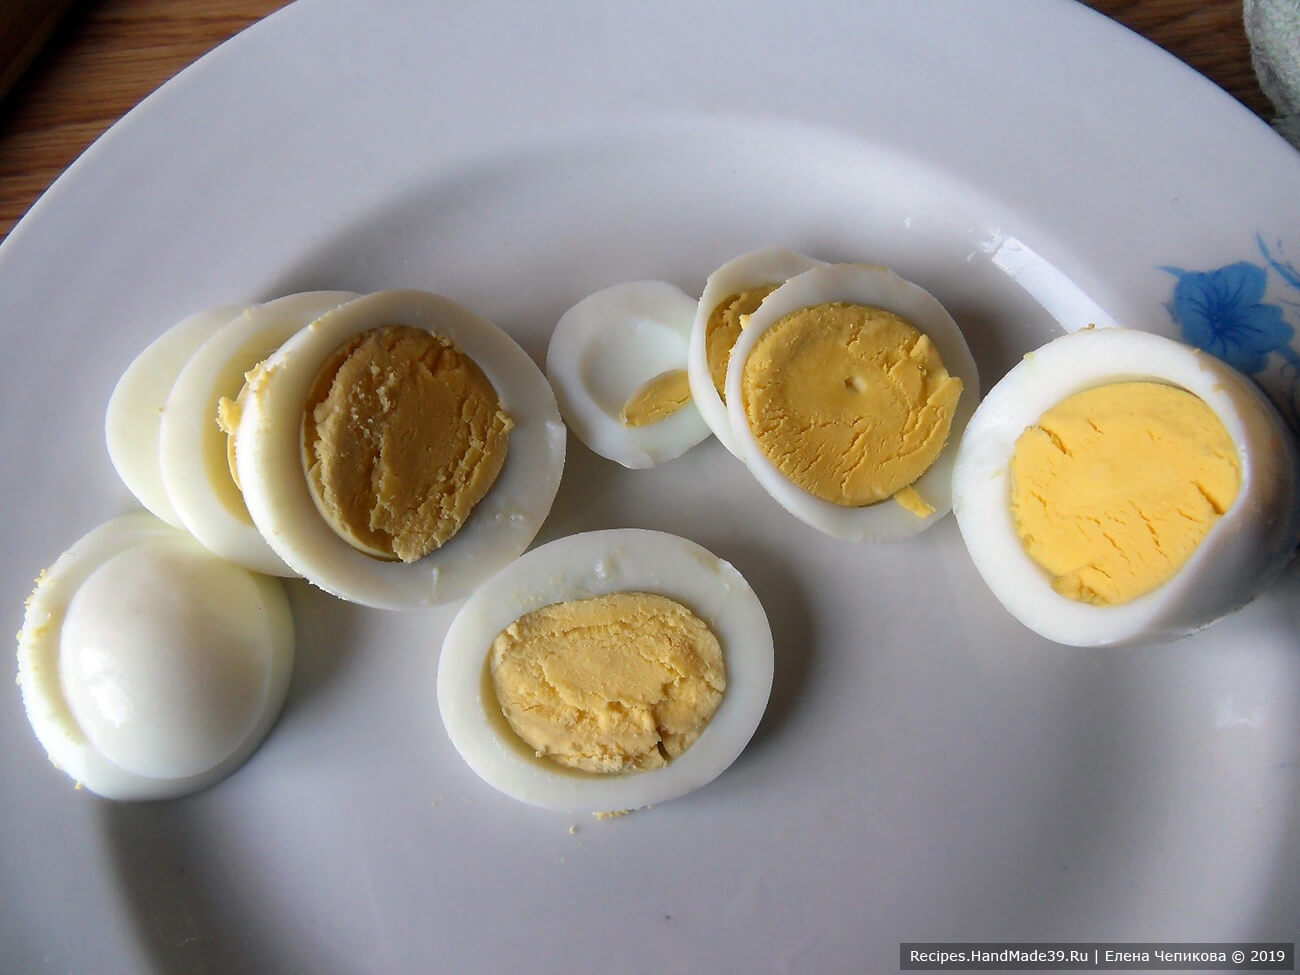 Приготовление салата: яйцо сварить вкрутую. Очистить, остудить, нарезать кружочками или кубиками